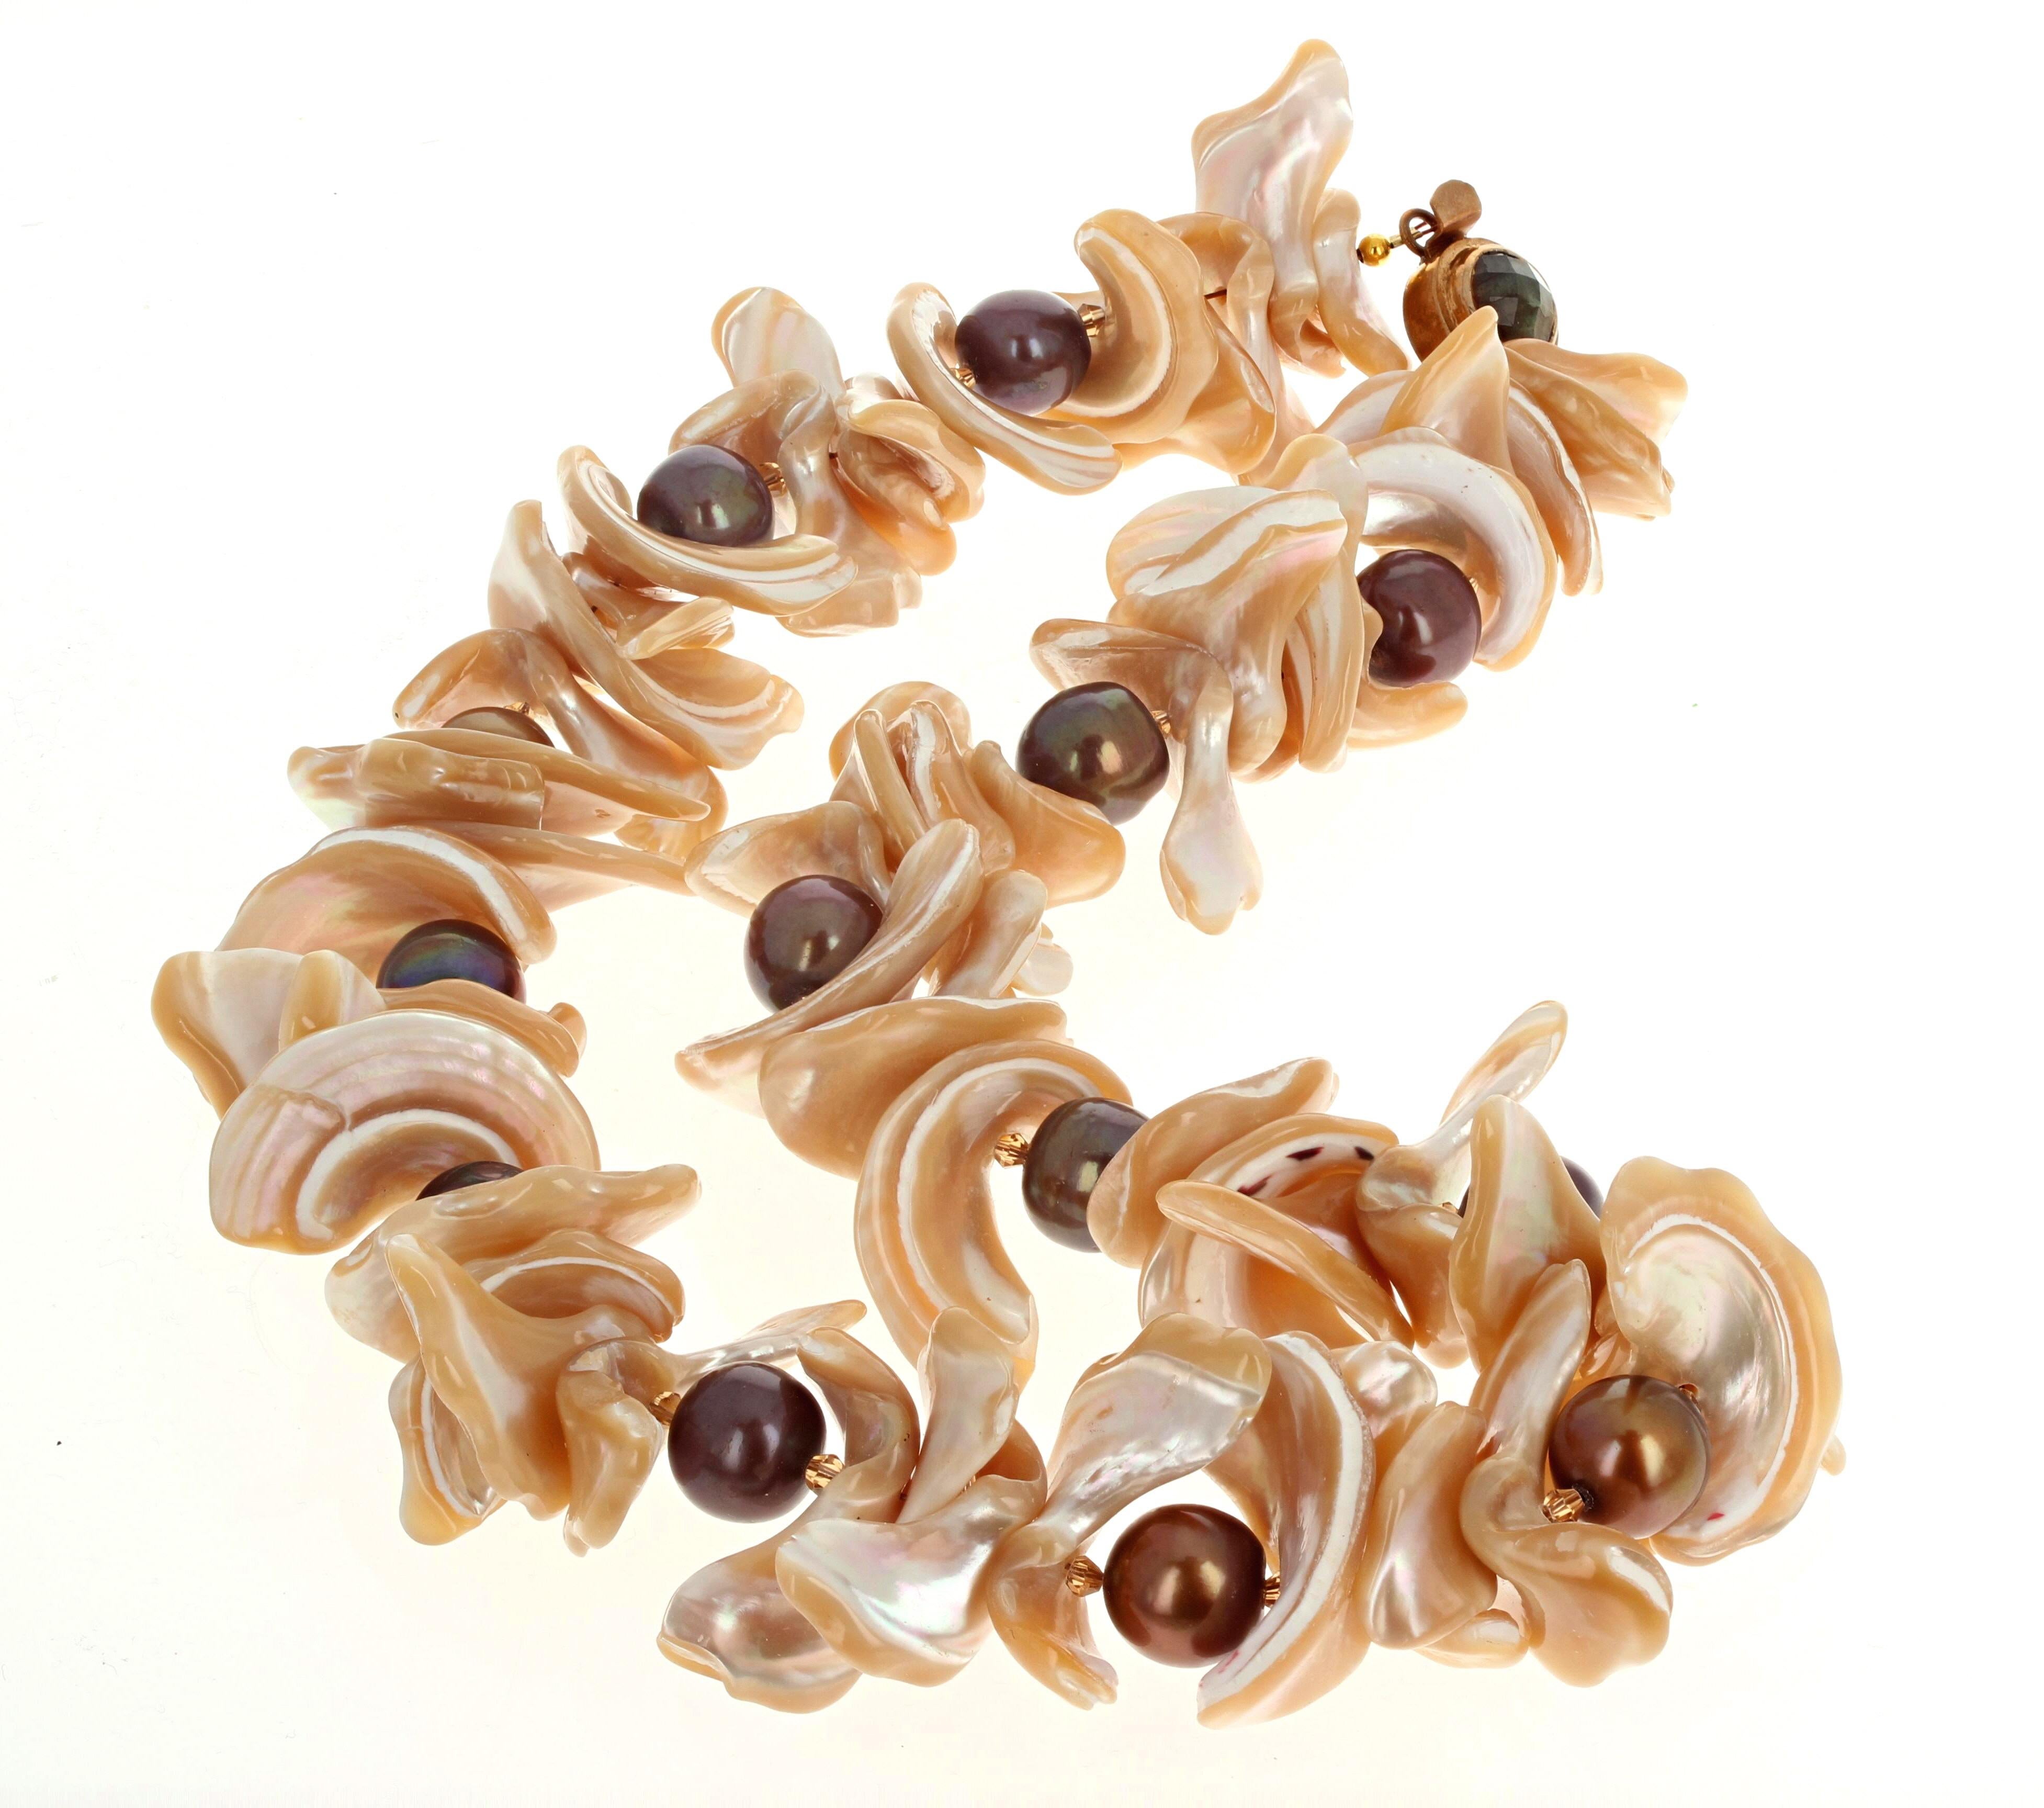 Ces magnifiques coquilles de perles entourent les vraies perles de culture rondes et brillantes de différentes couleurs.  Les plus grandes coquilles mesurent environ 30 mm de long.  Les perles sont rondes d'environ 12 mm.  Ce collier de 19 pouces de